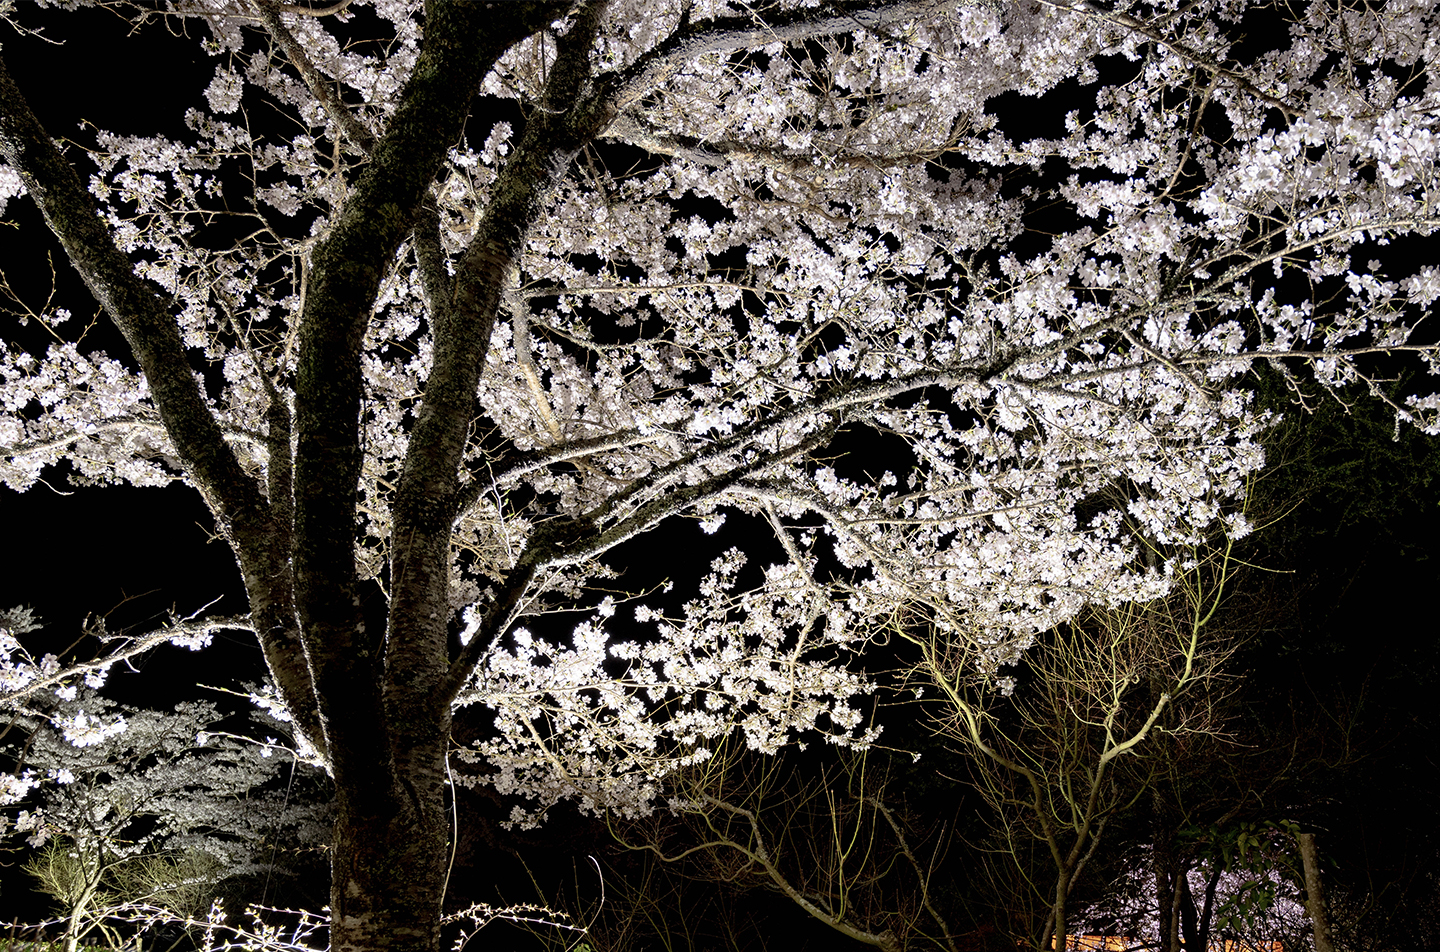 京都の和食レストラン ゆう月の夜桜のライトアップ